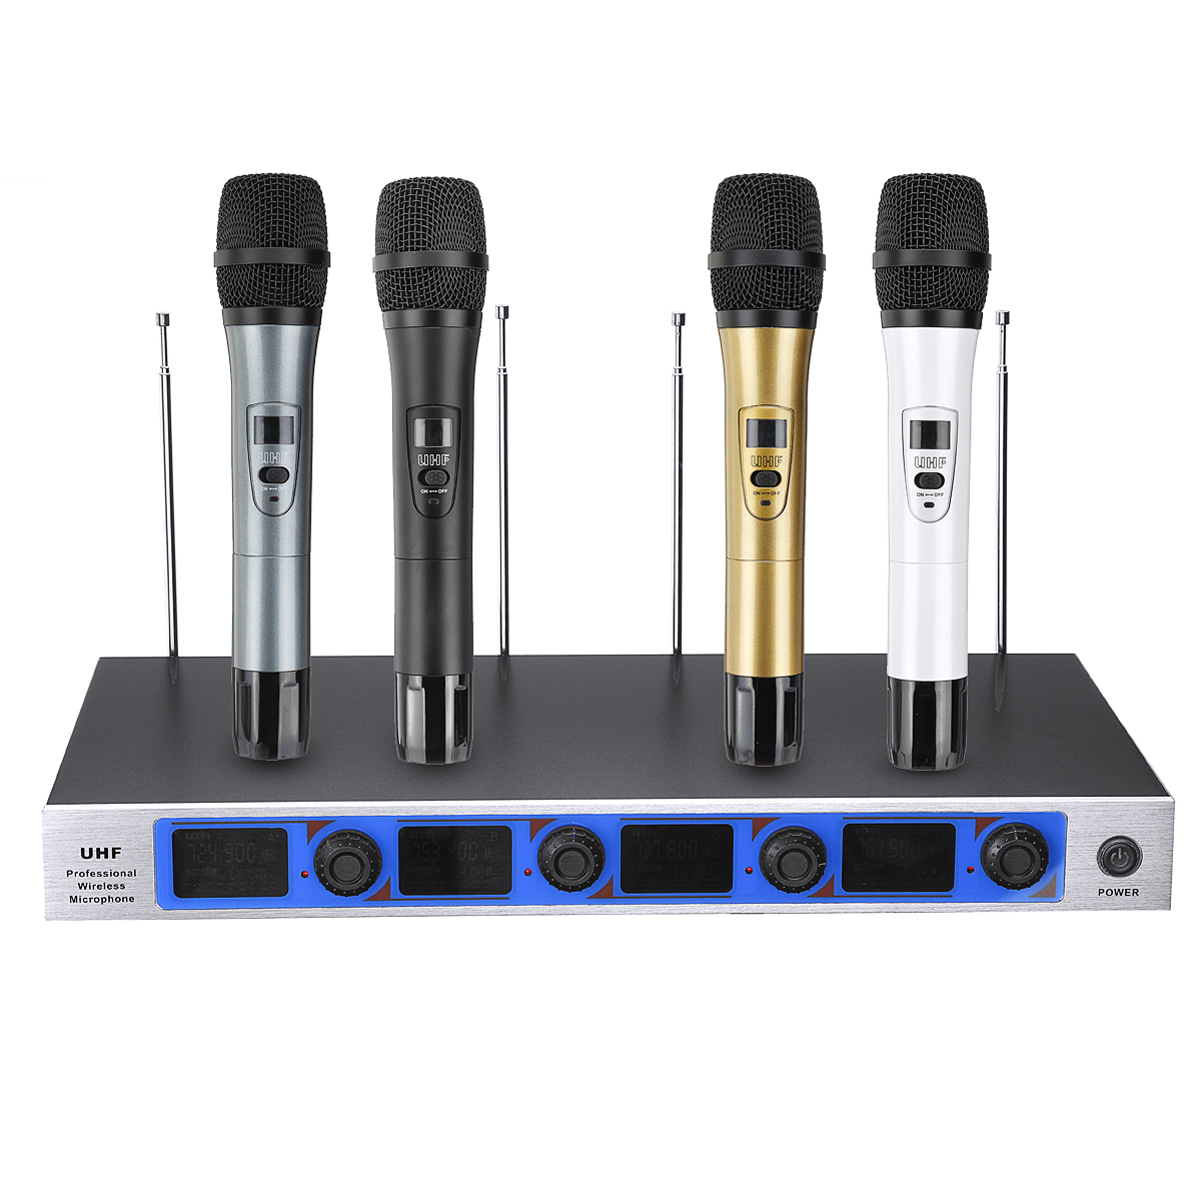 Караоке ау. UHF professional Wireless Microphone. Professional Universal Wireless Microphone. KX-d3934/микшер для микрофонов + 4 беспроводных микрофонов. K9 Wireless Microphone.